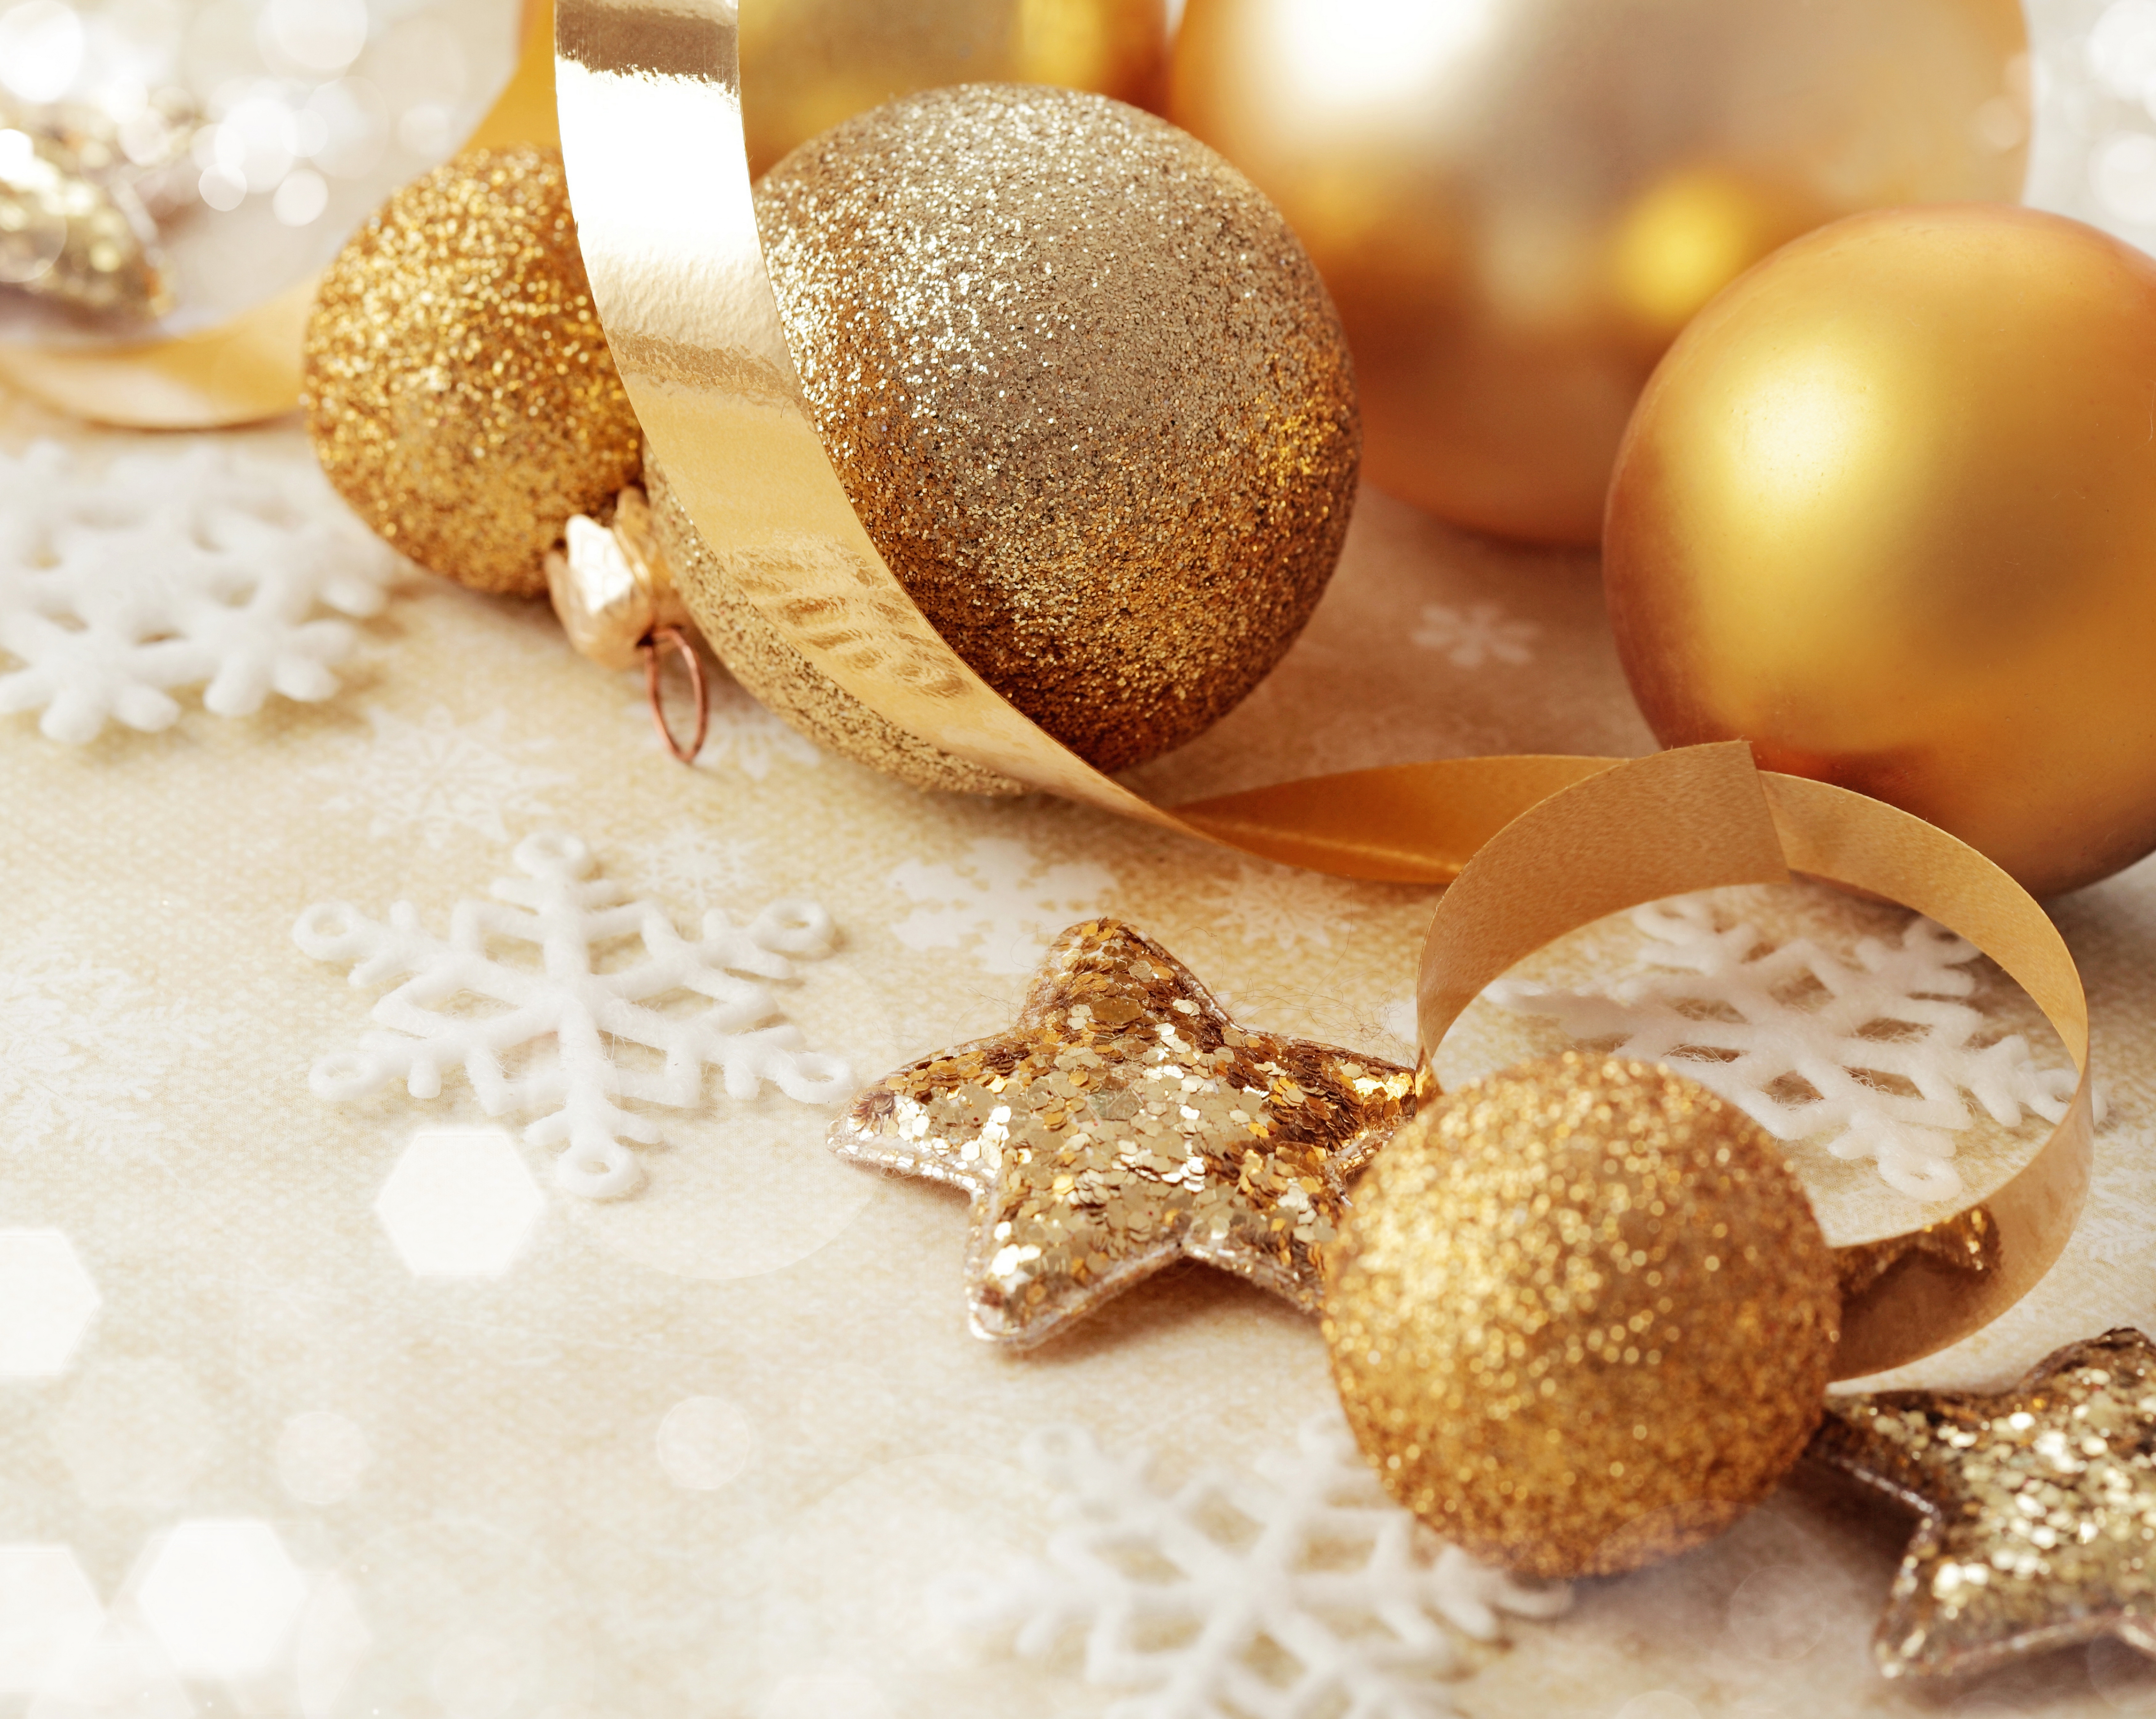 Елочные игрушки новый год шары украшения Christmas decorations new year balls decoration бесплатно